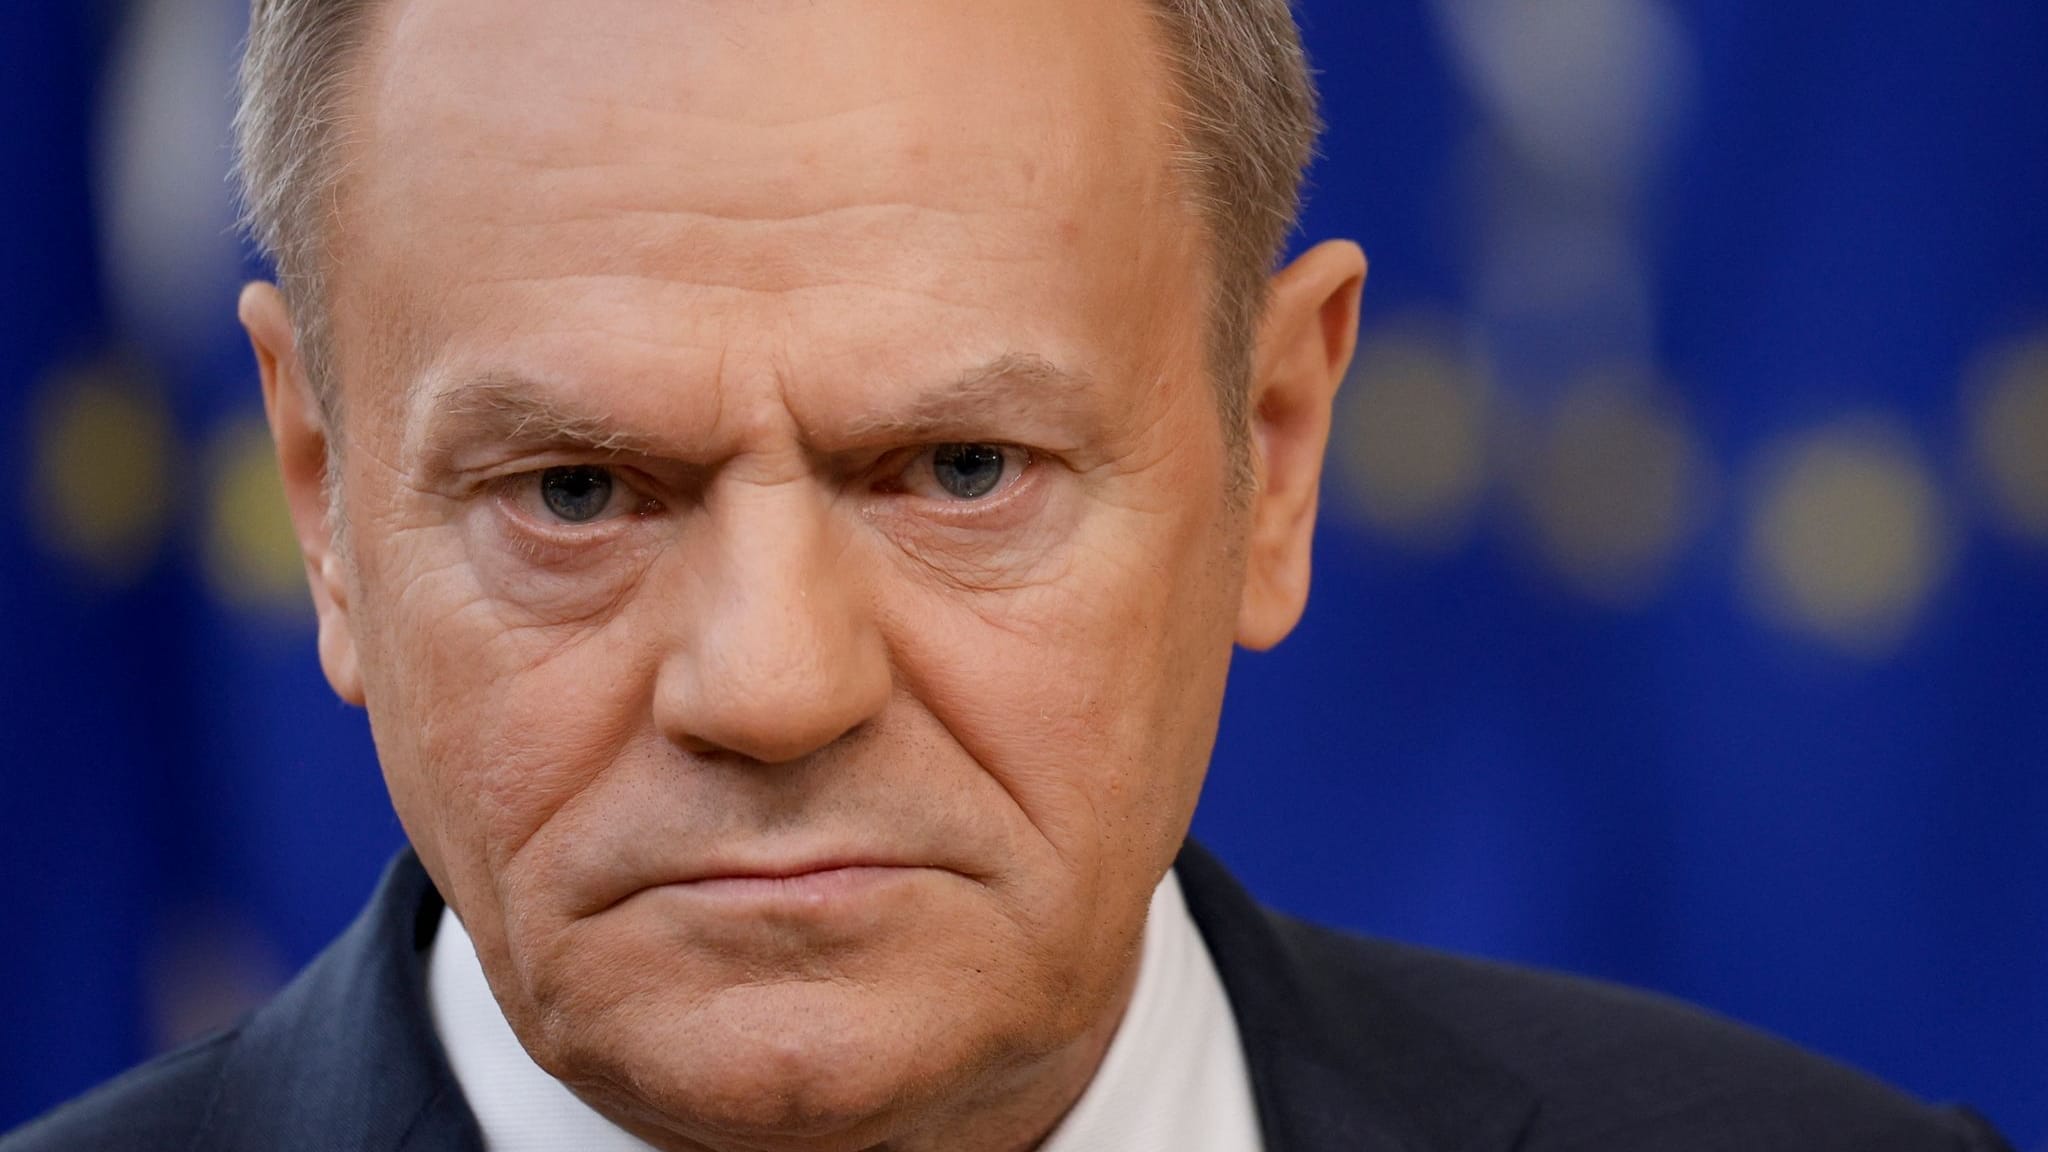 Rückschlag für Donald Tusk: PiS bei polnischen Kommunalwahlen vorne